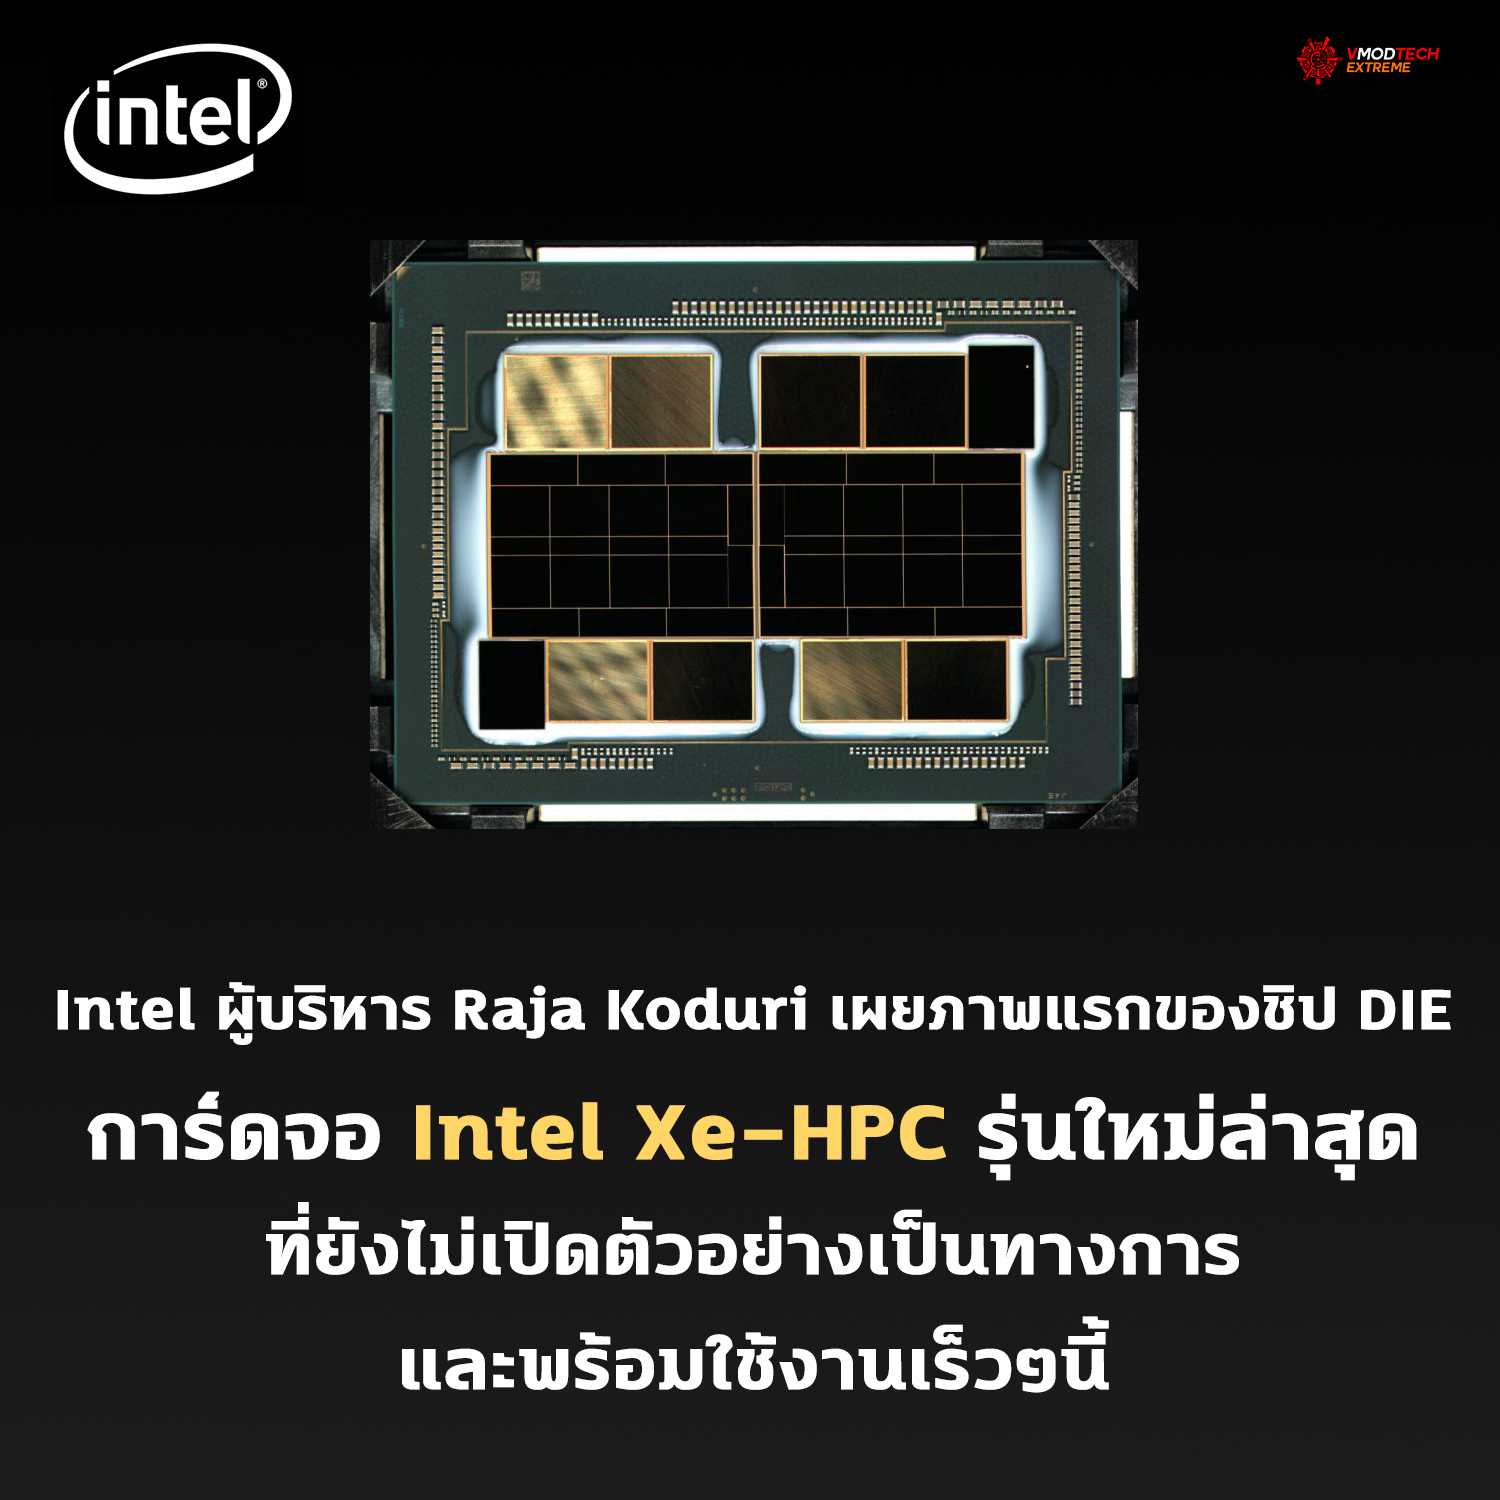 intel xe hpc Intel ผู้บริหาร Raja Koduri เผยภาพแรกของชิป DIE การ์ดจอ Intel Xe HPC รุ่นใหม่ล่าสุดที่ยังไม่เปิดตัวอย่างเป็นทางการ